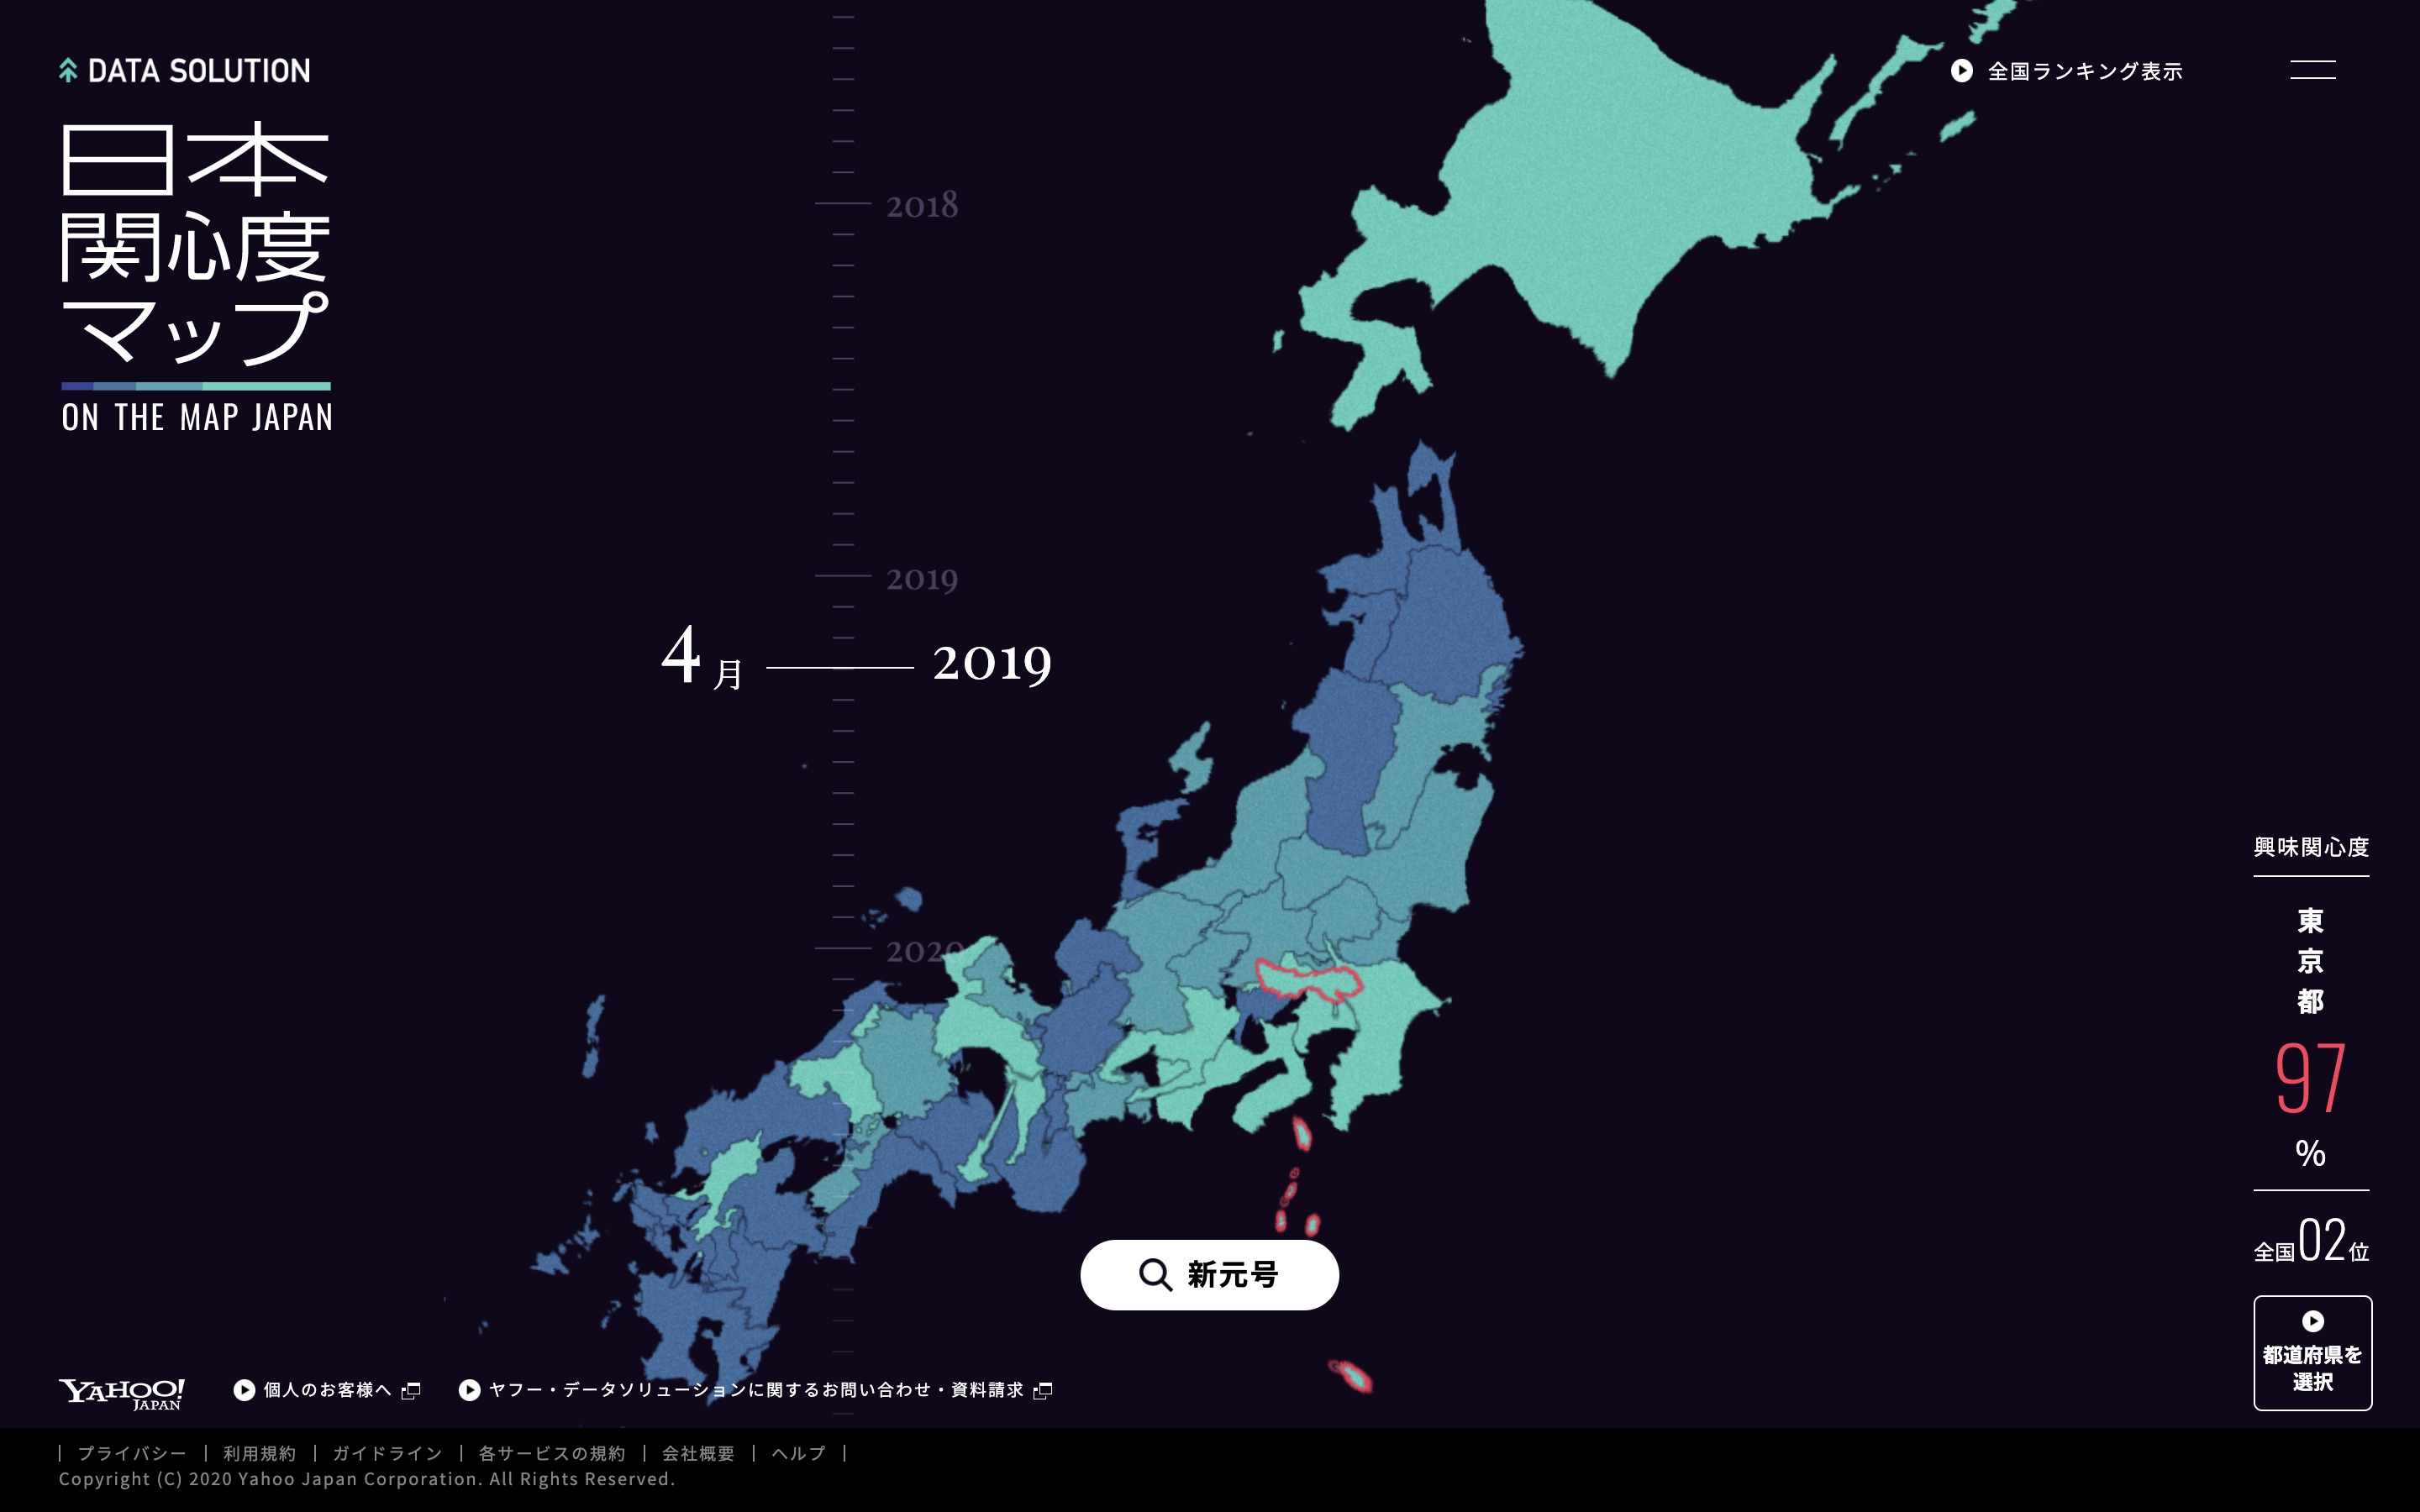 ヤフー 都道府県別の関心度を地図上で可視化 キーワードと時間軸で違いを直感的に把握 トラベルボイス 観光産業ニュース